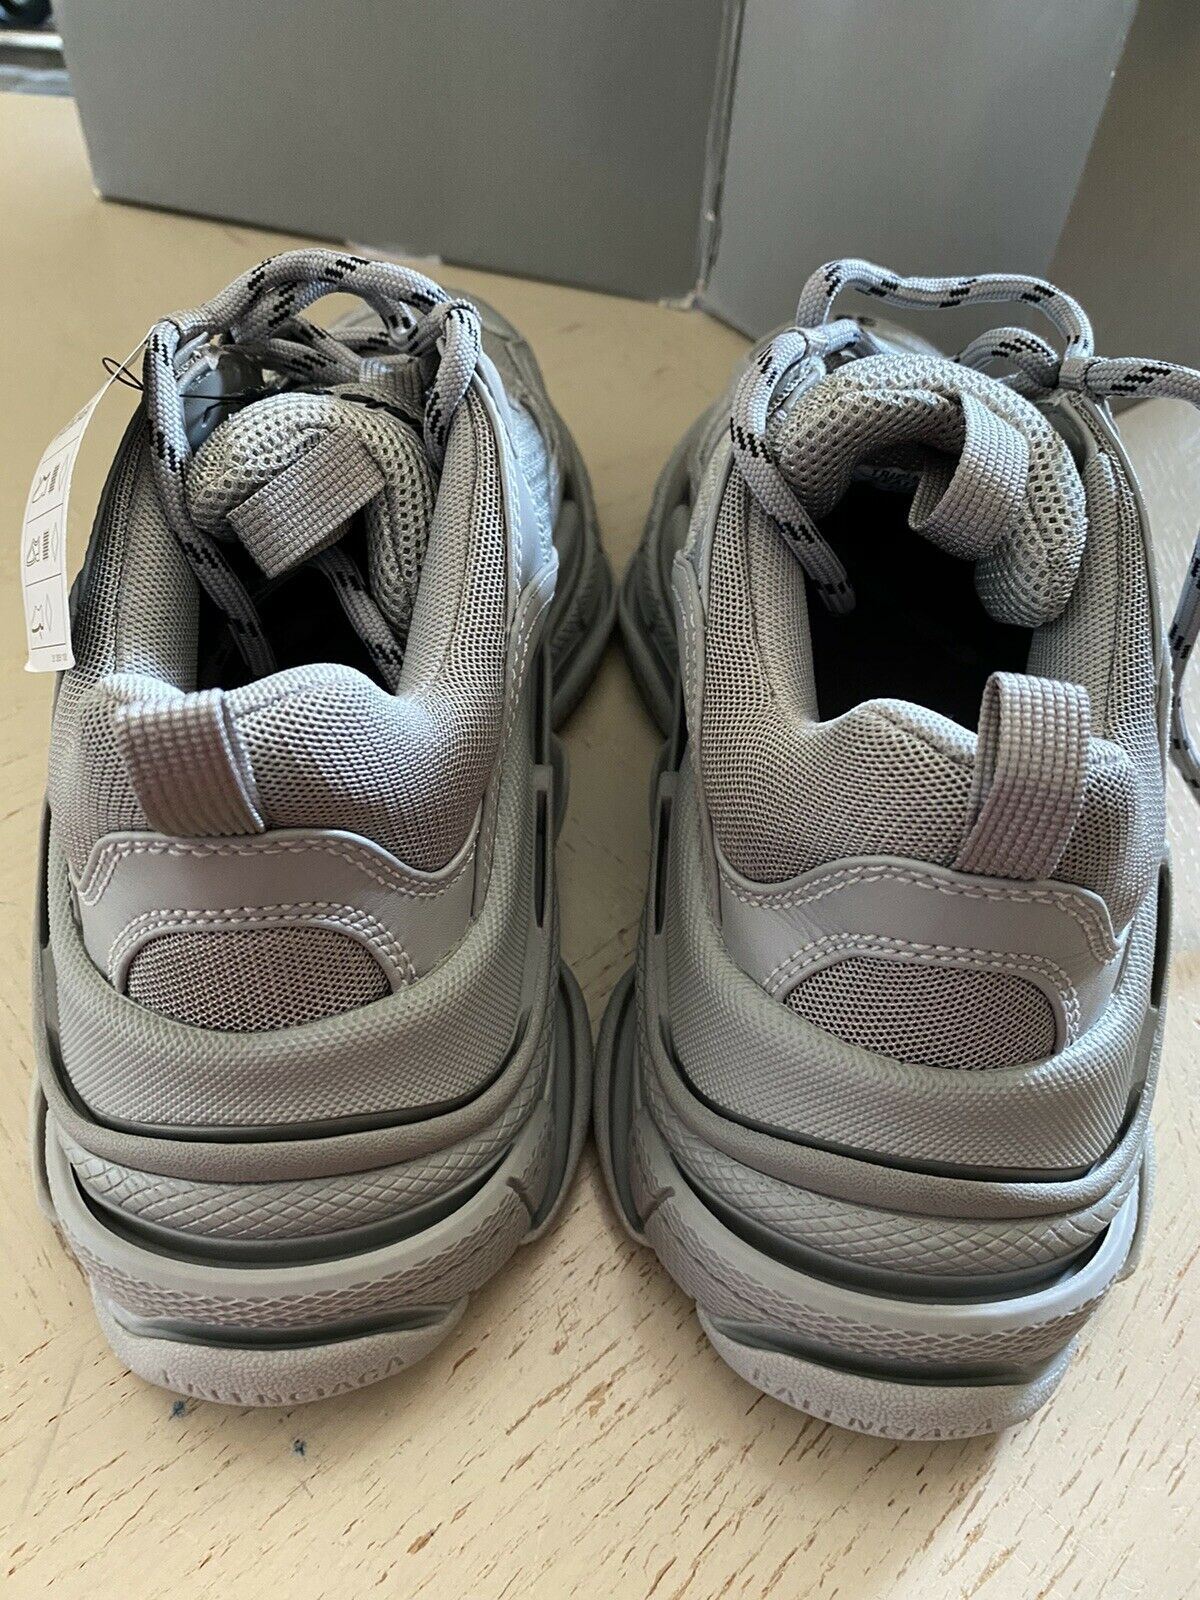 NIB $975 Balenciaga Women Triple S Sneakers Shoes Gray 8 US/38 Eu